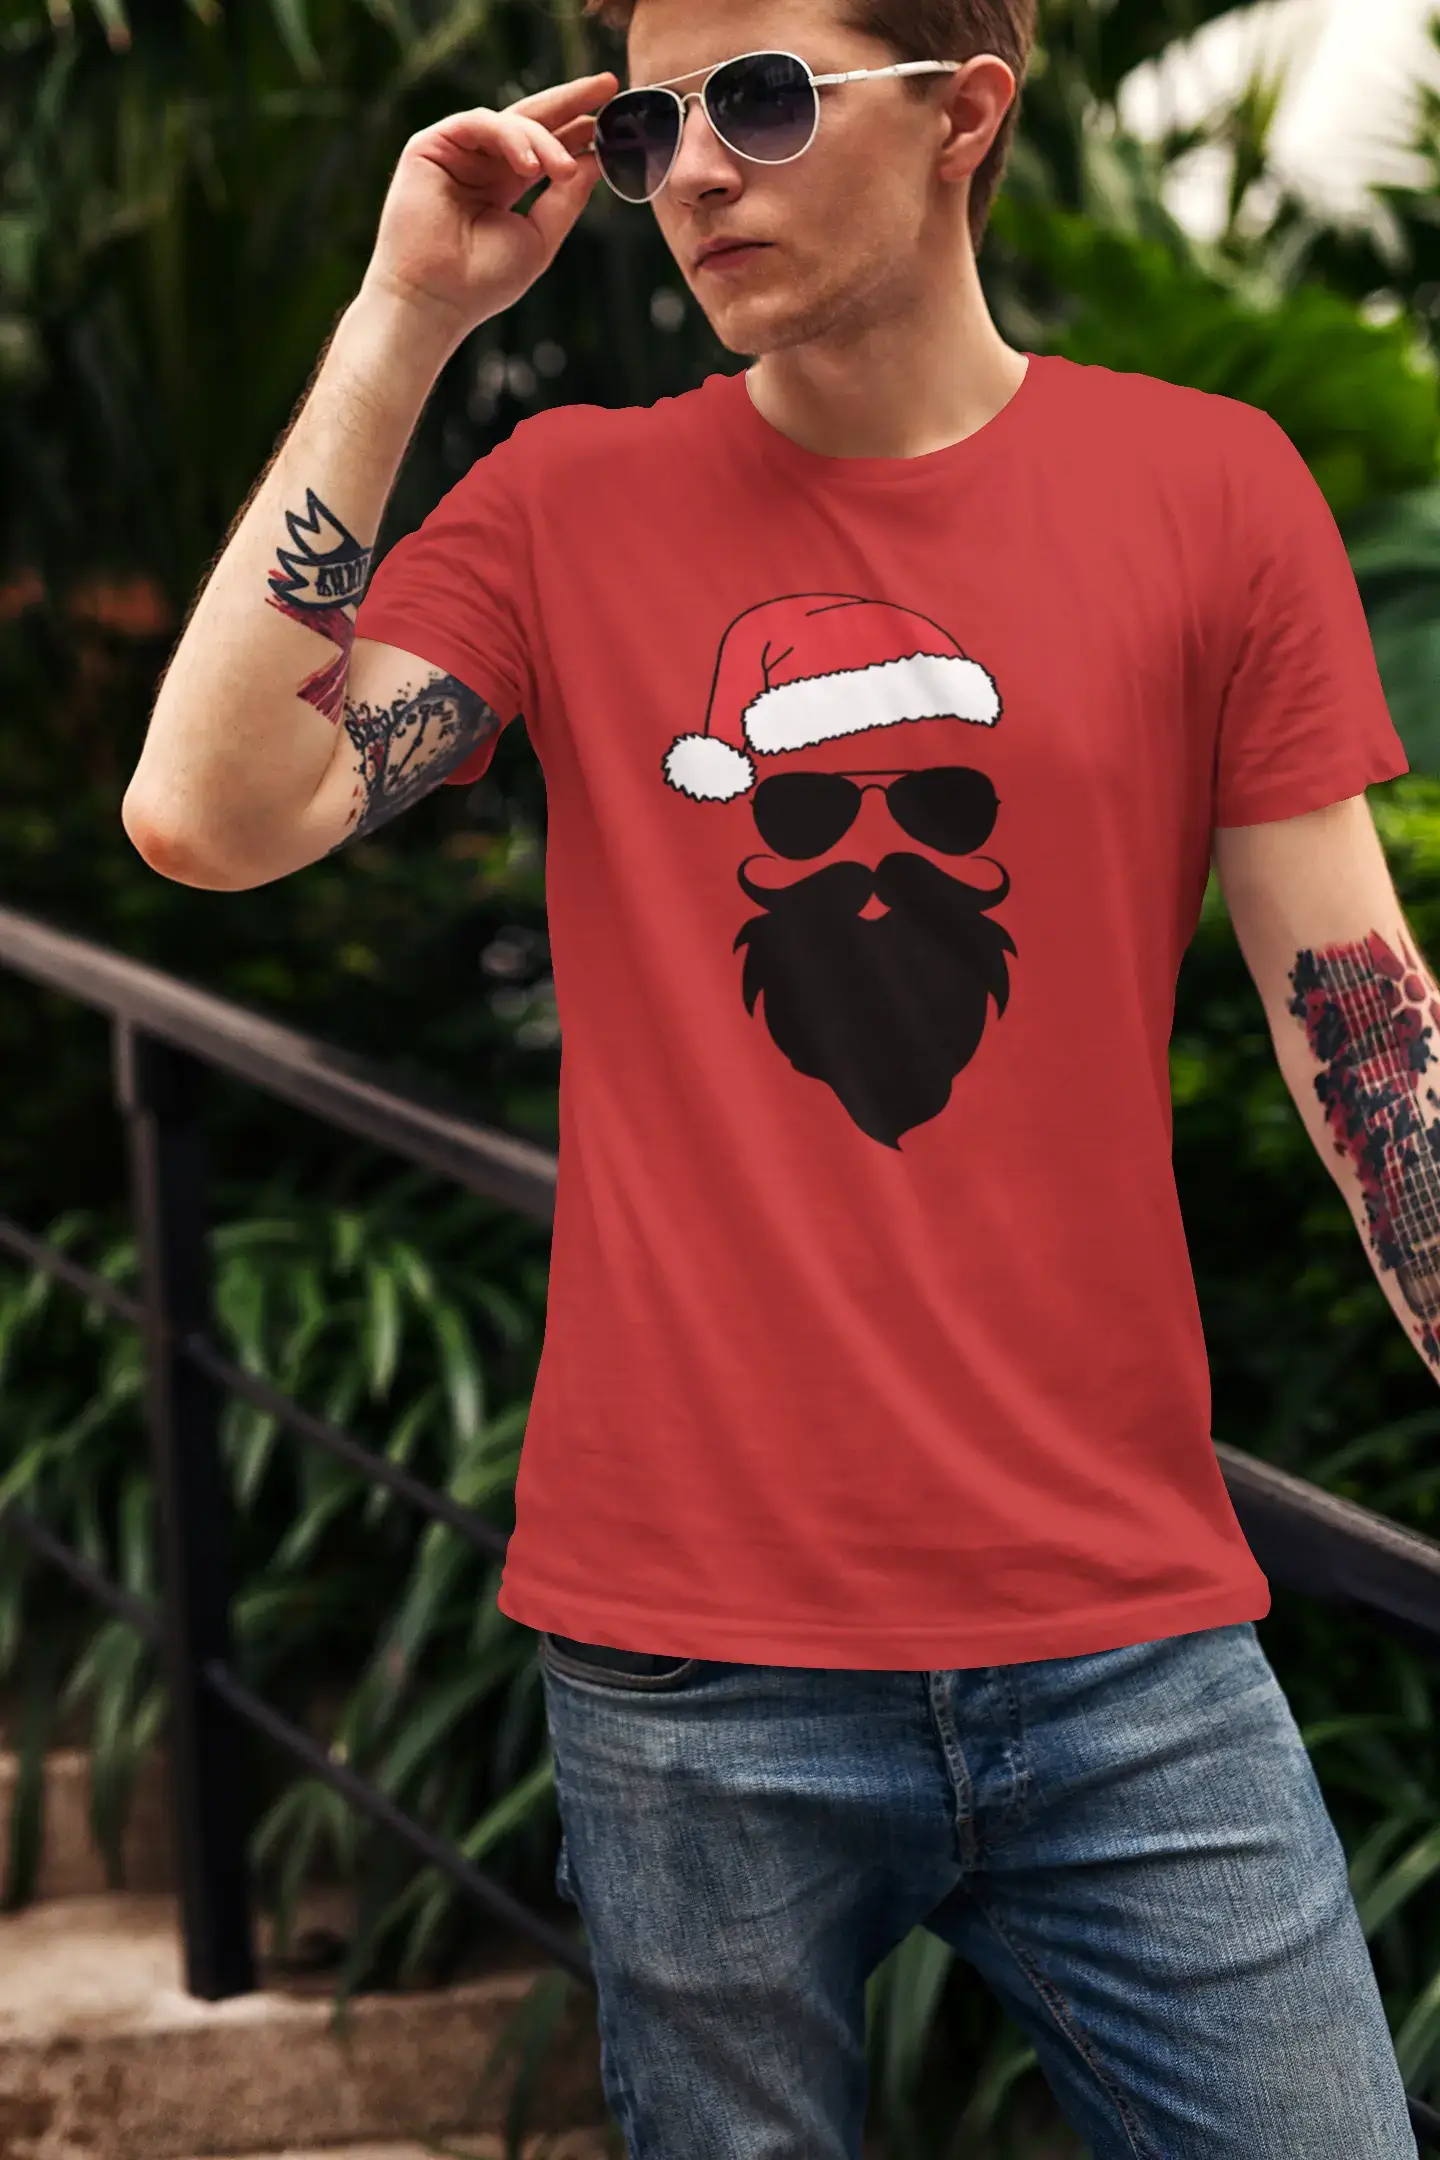 ULTRABASIC - Graphic Men's Funny Santa Cool Christmas T-Shirt Gift Tee White